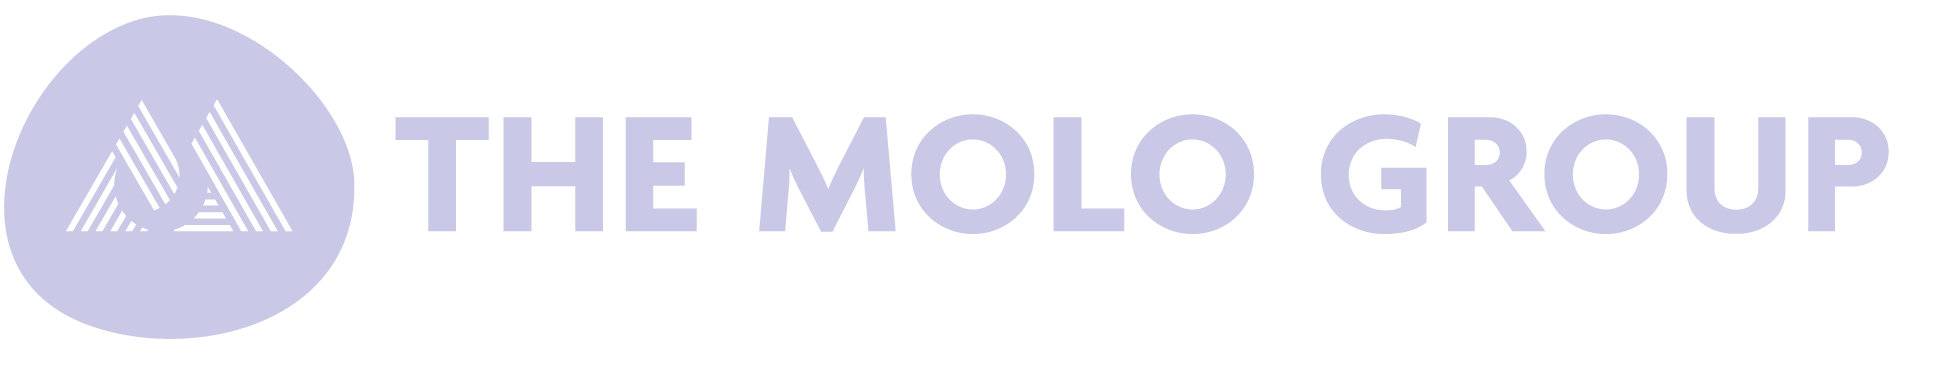 The-molo-group_logo-2022-2